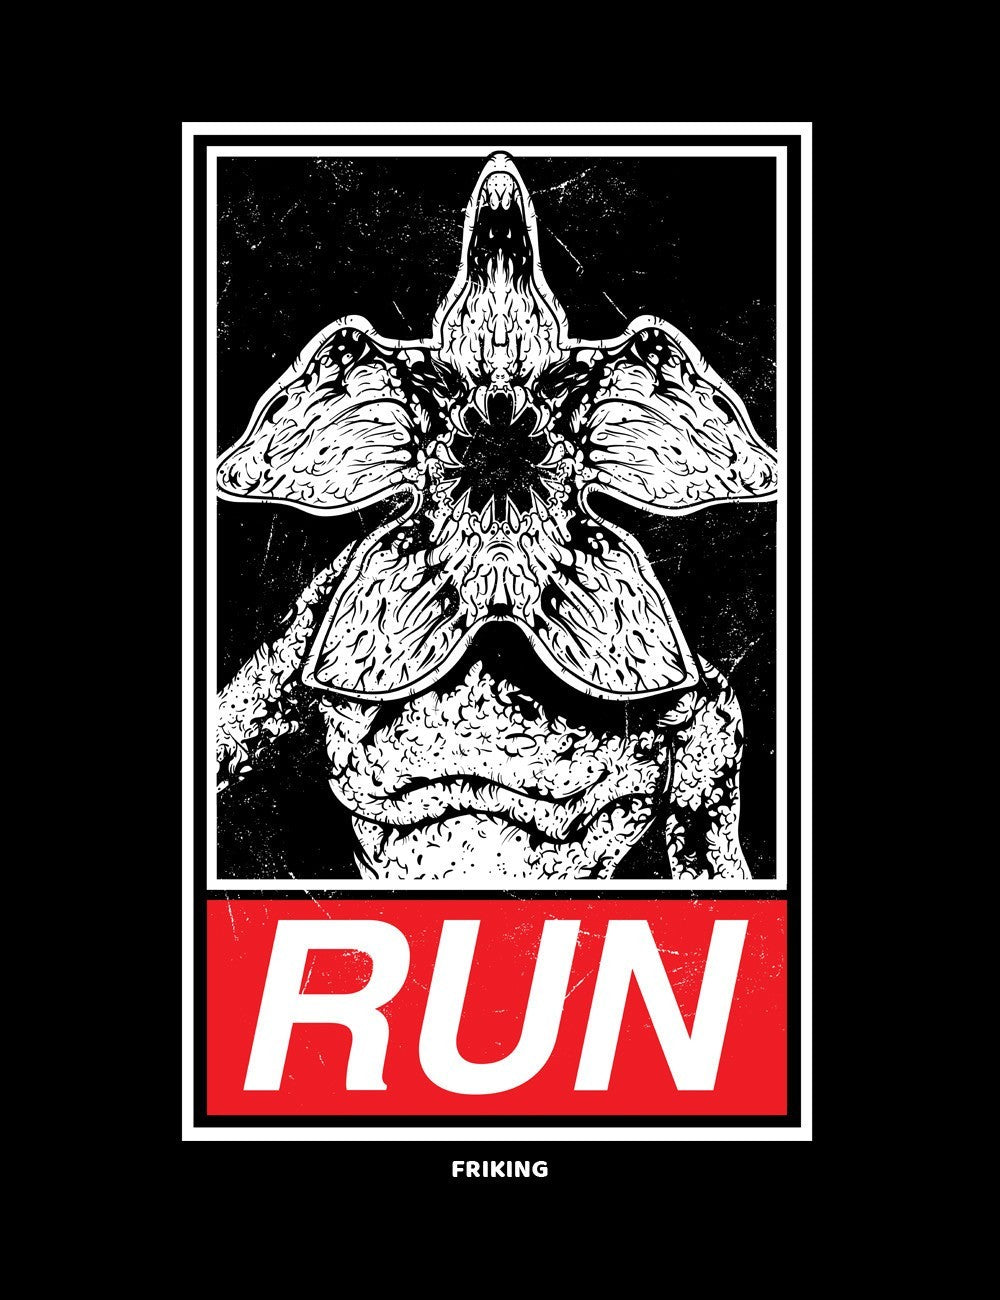  Run 